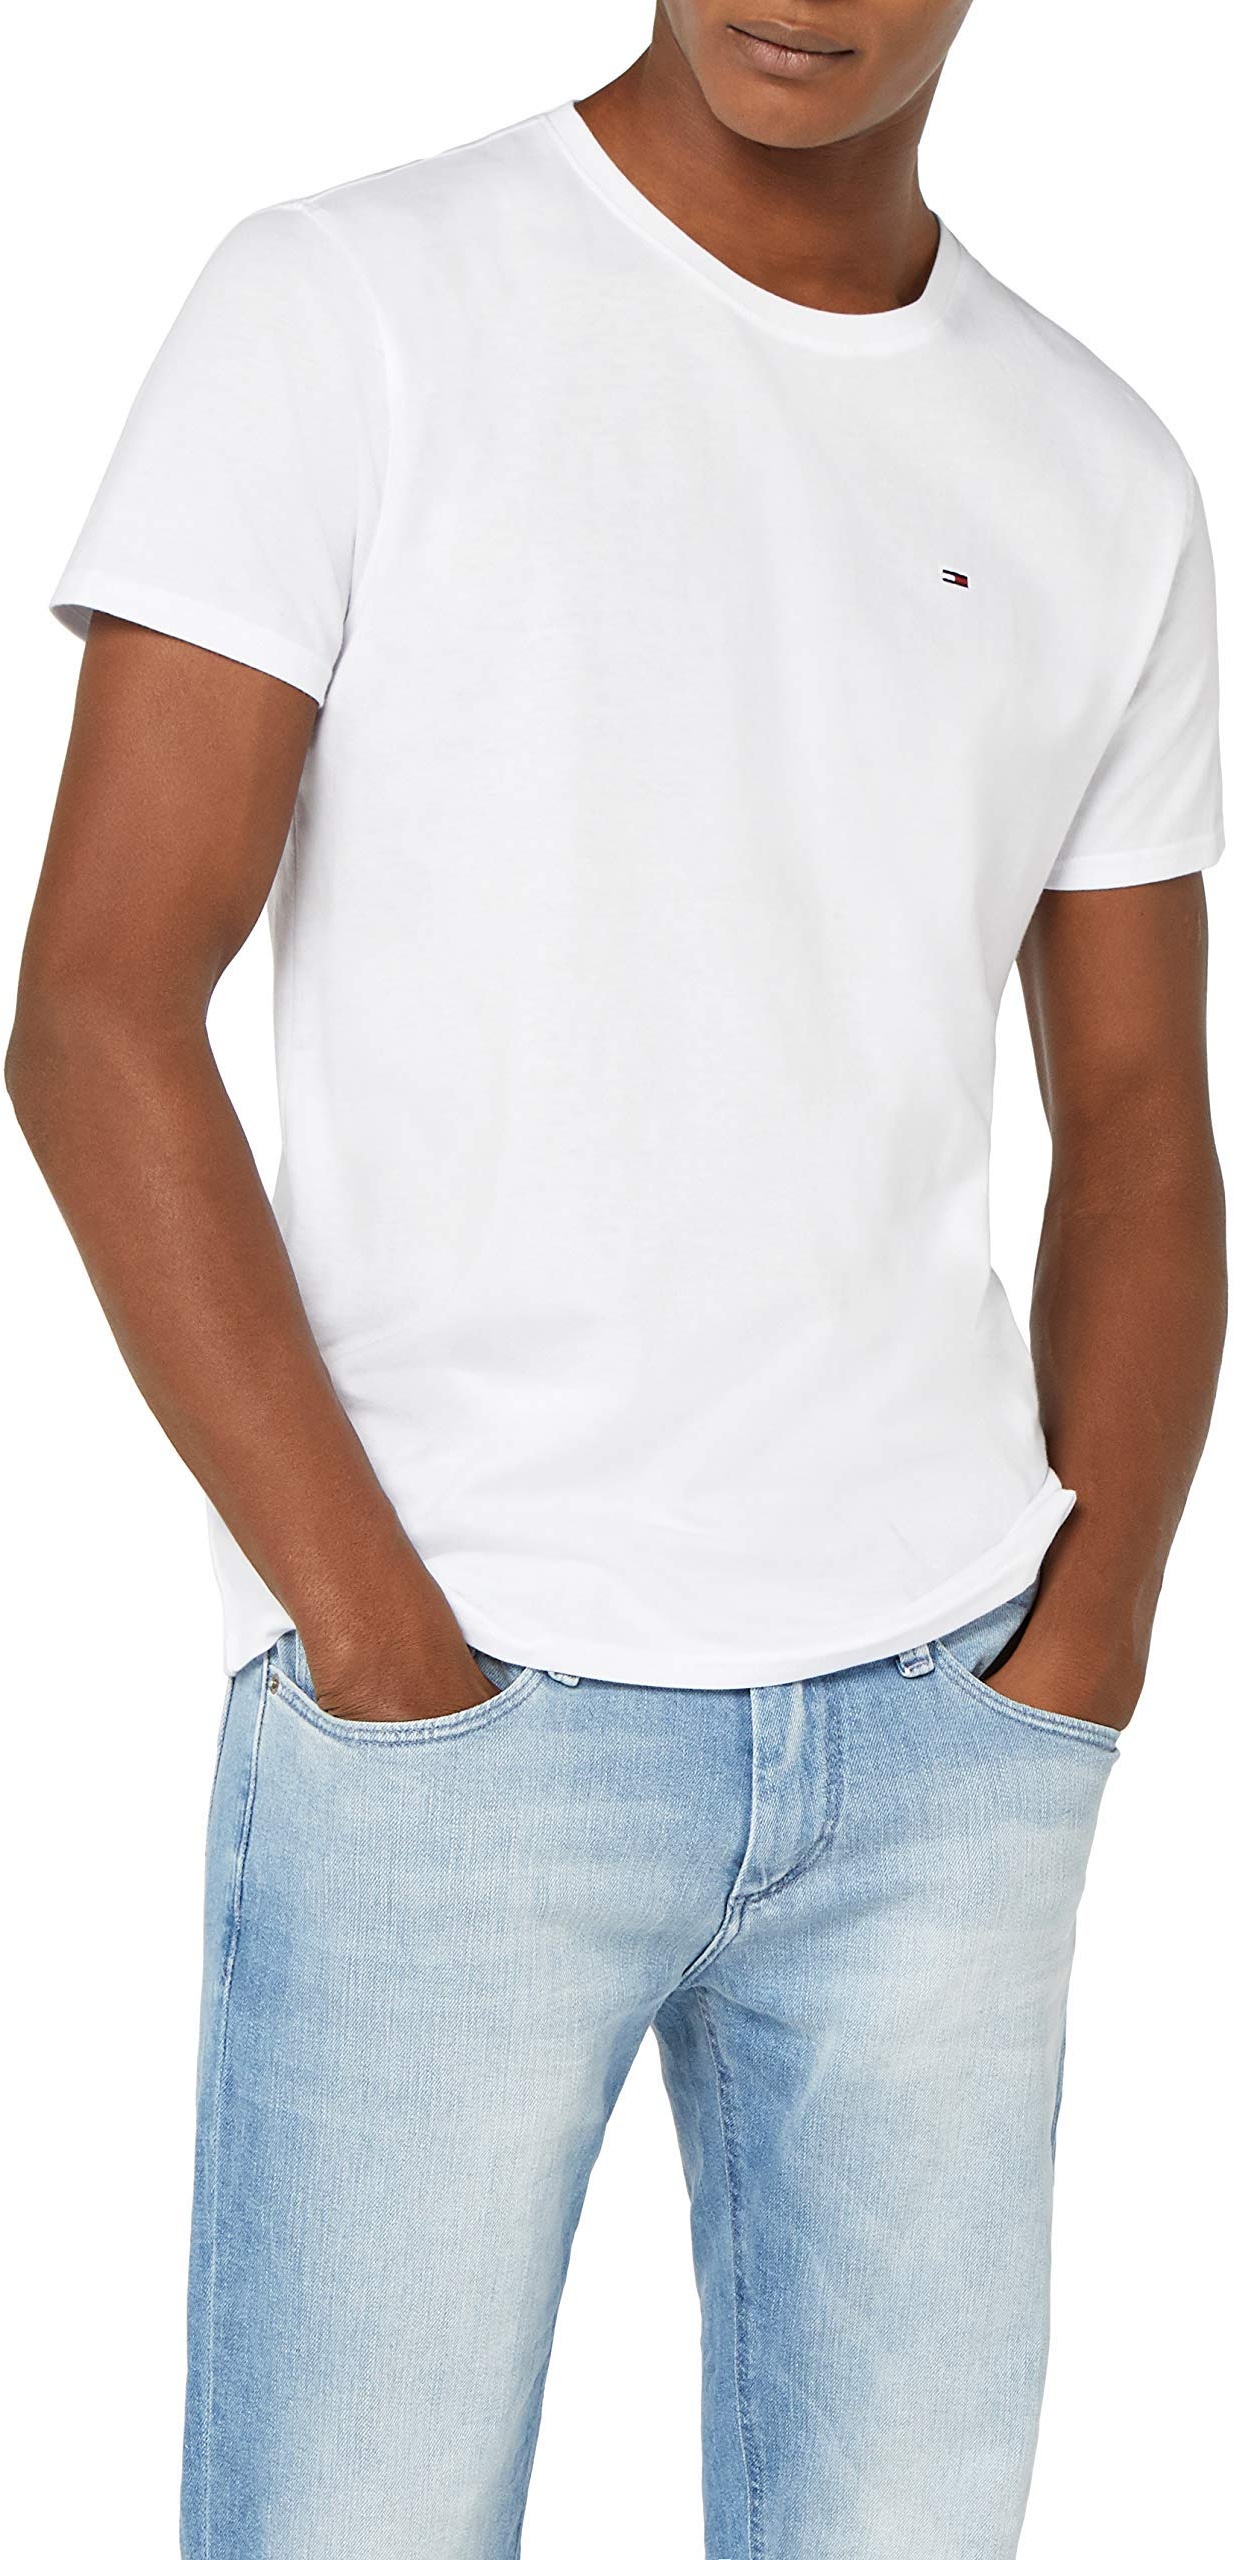 Tommy Hilfiger T-Shirt Herren Kurzarm TJM Original Slim Fit, Weiß (Classic White), L